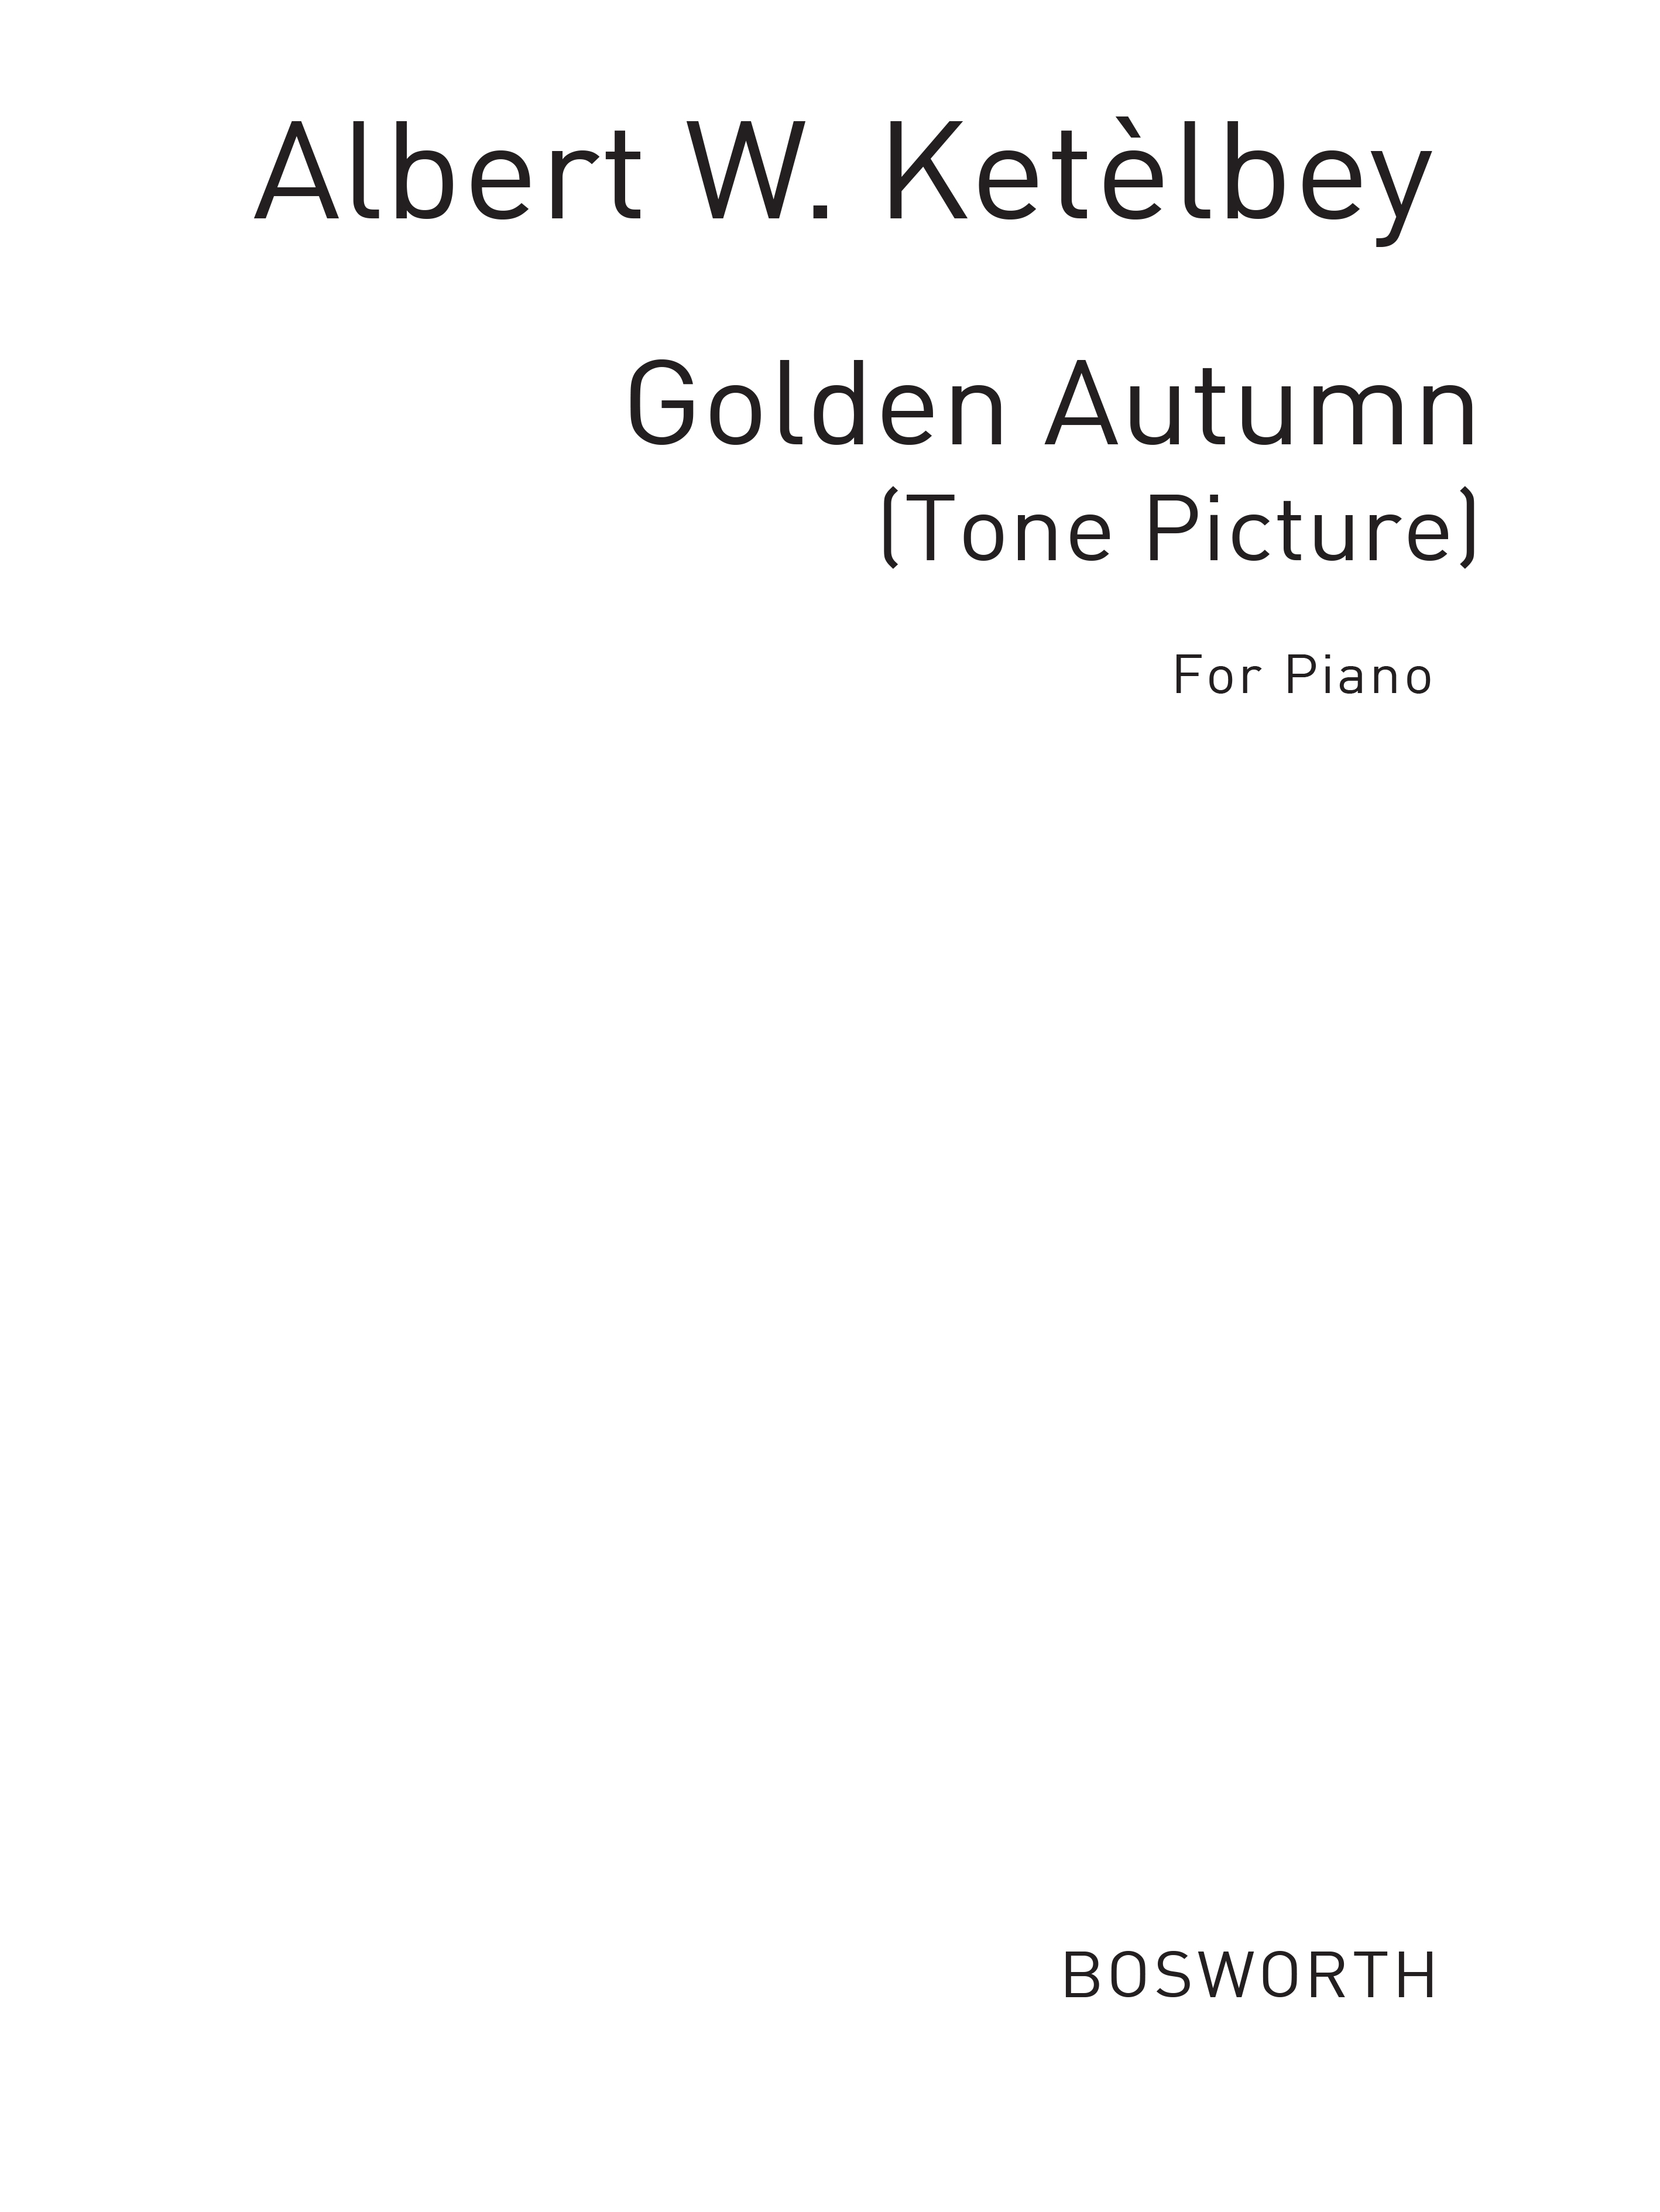 Albert Ketlbey: Golden Autumn (Tone Picture)